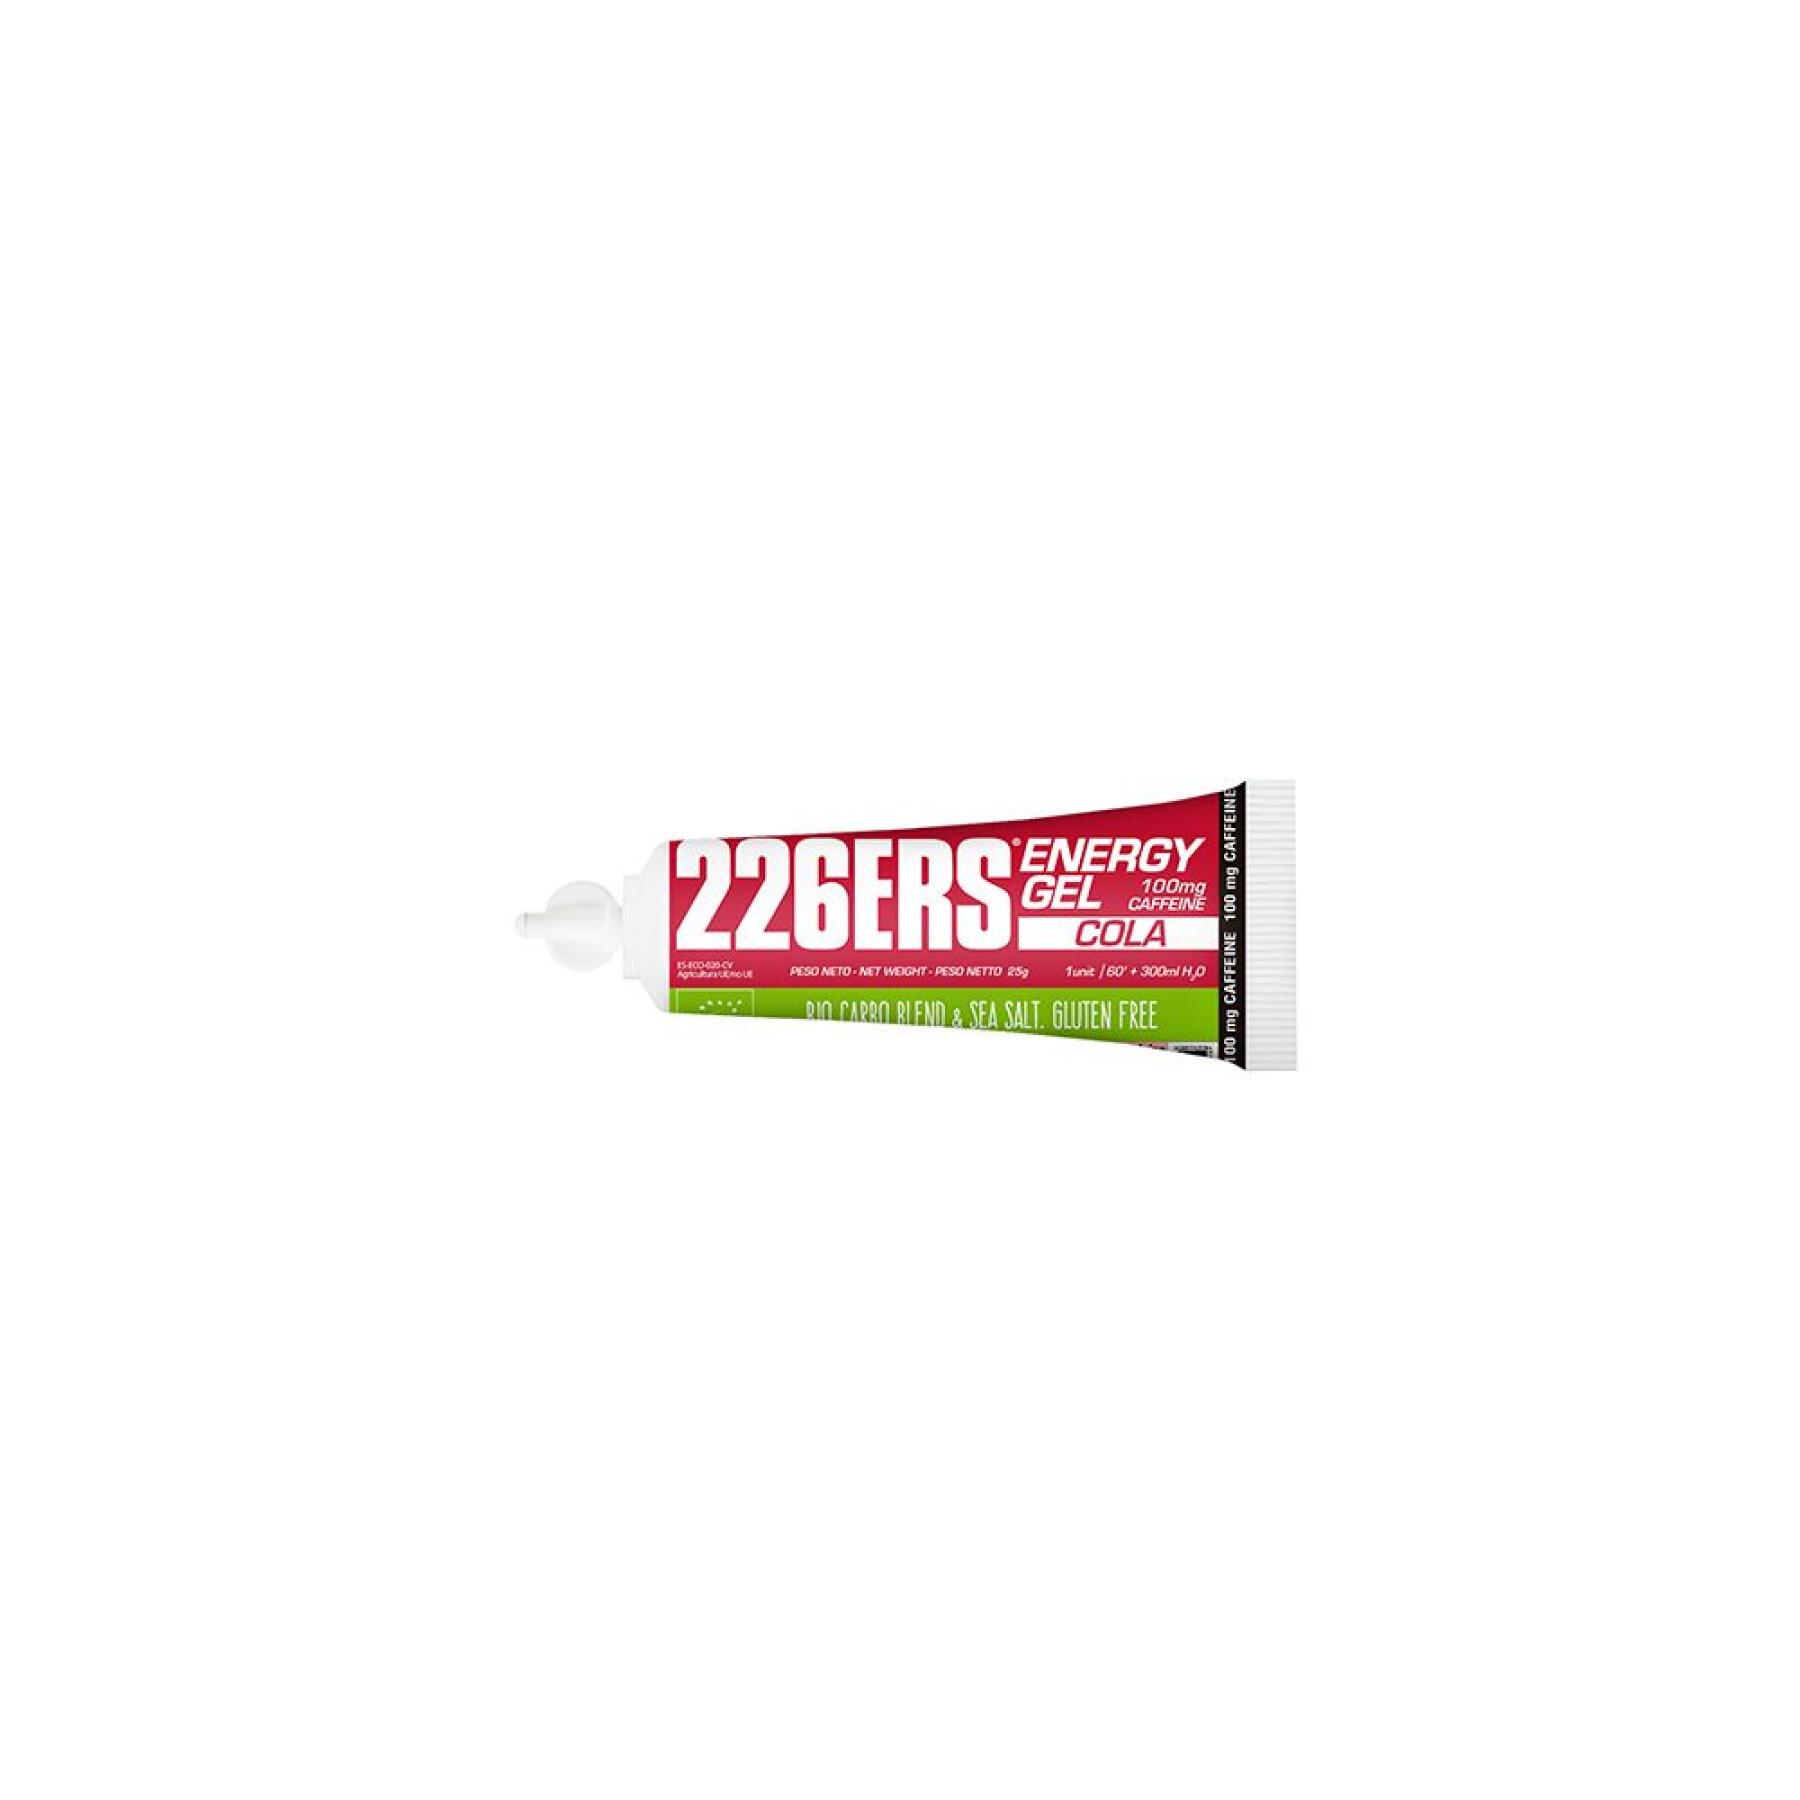 Energi gel 226ERS Bio 25g 100 mg Caffeine Cola*